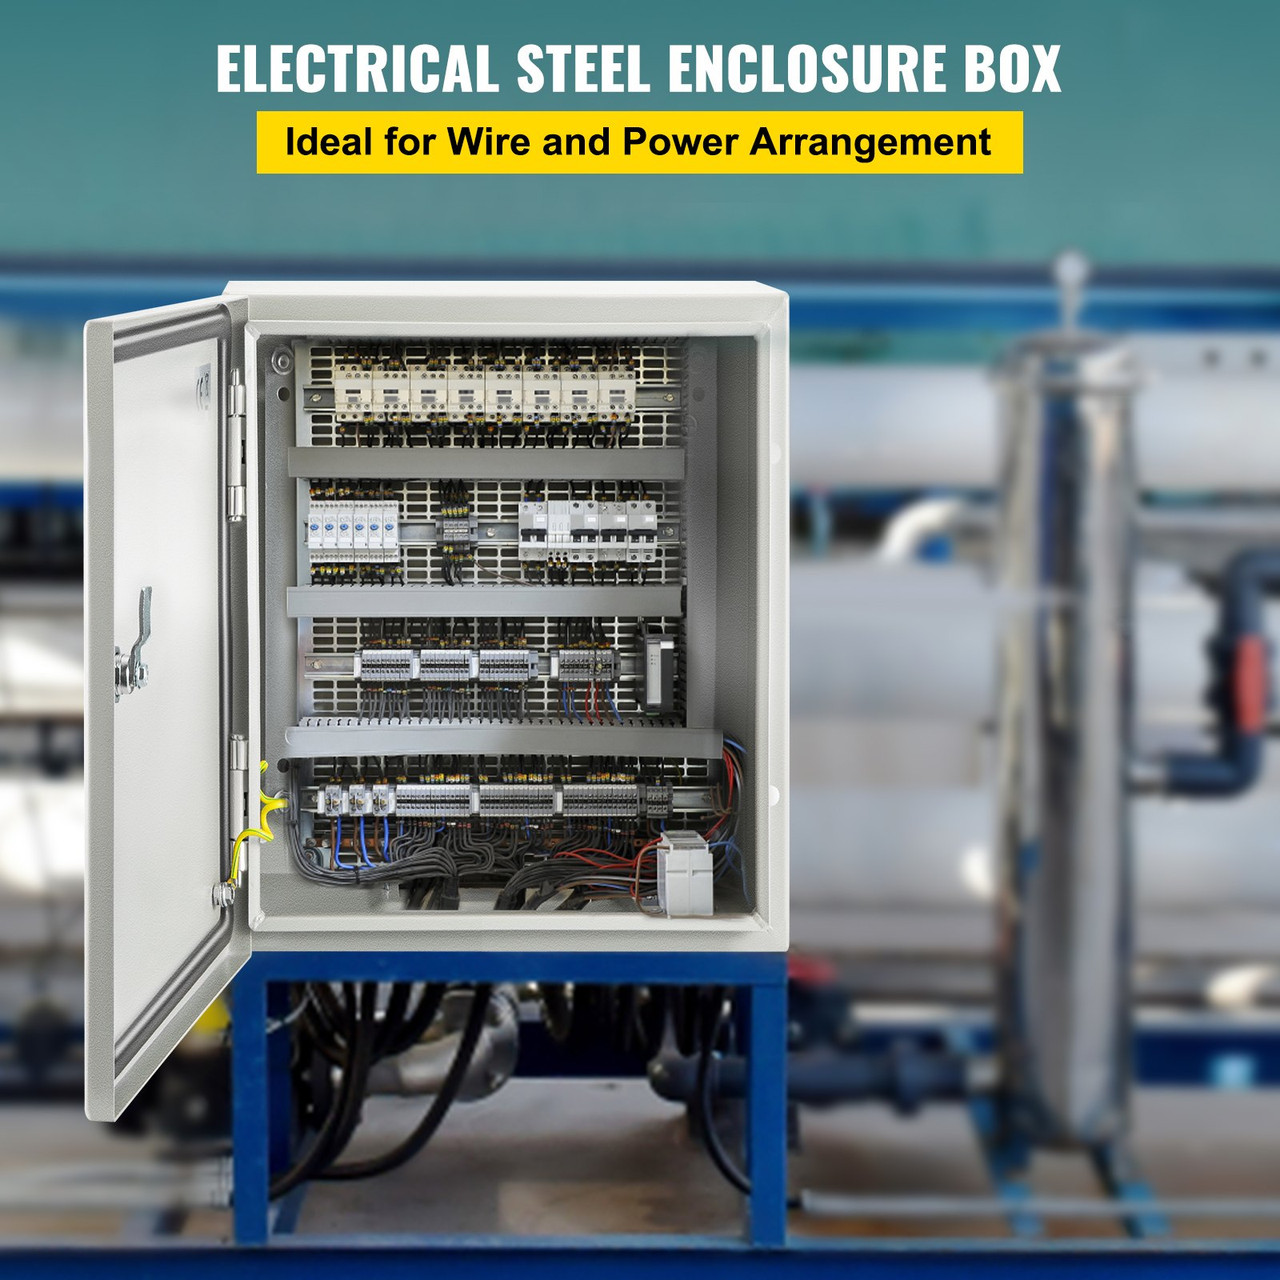 NEMA Steel Enclosure, 12 x 10 x 6'' NEMA 4X Steel Electrical Box, IP66 Waterproof & Dustproof, Outdoor/Indoor Electrical Junction Box, with Mounting Plate